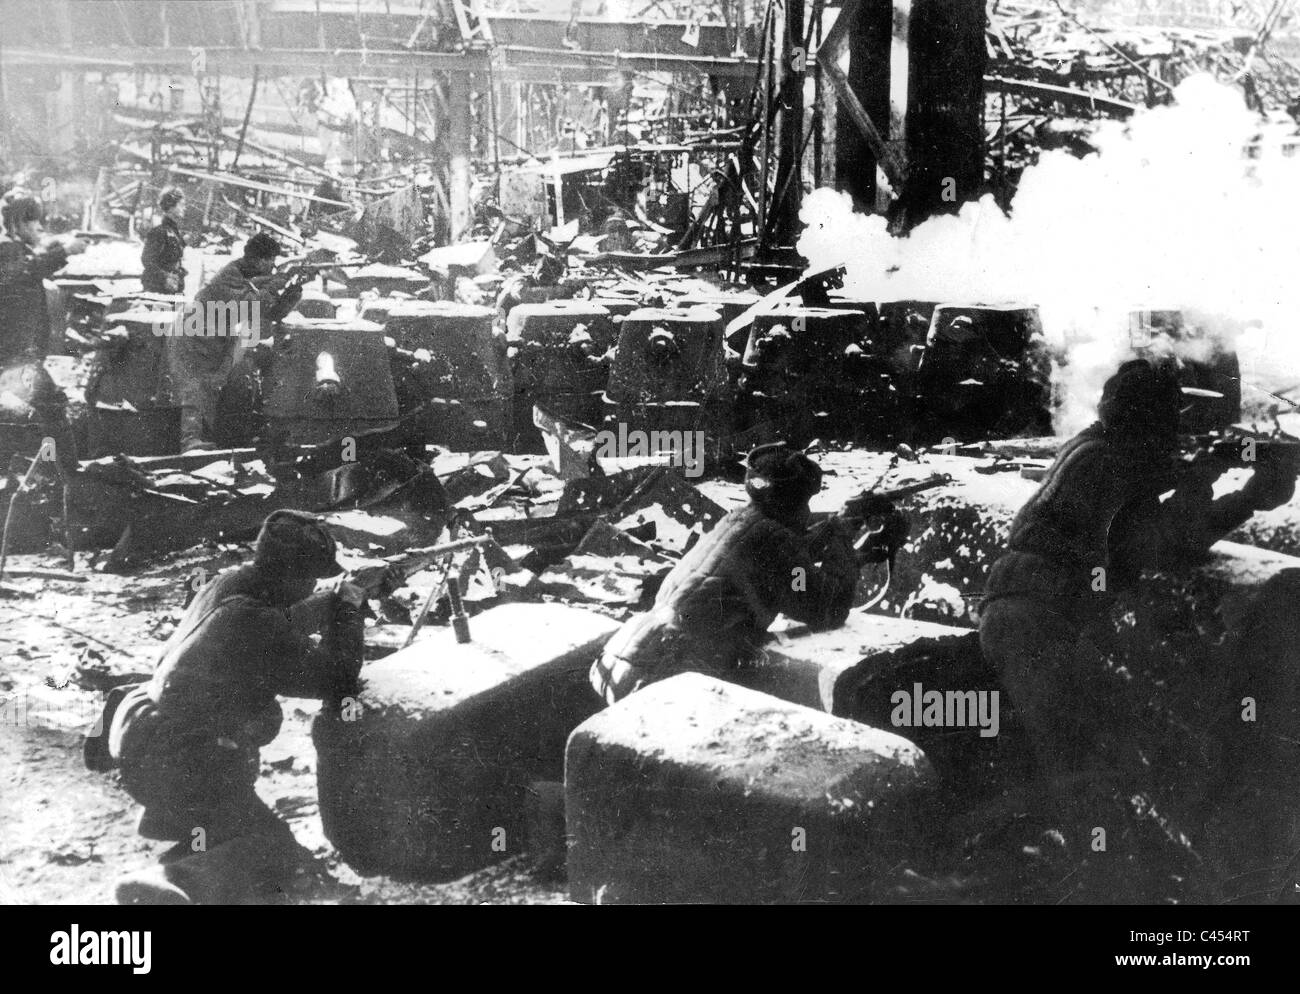 Des soldats soviétiques dans une usine située à Stalingrad, 1942 Banque D'Images